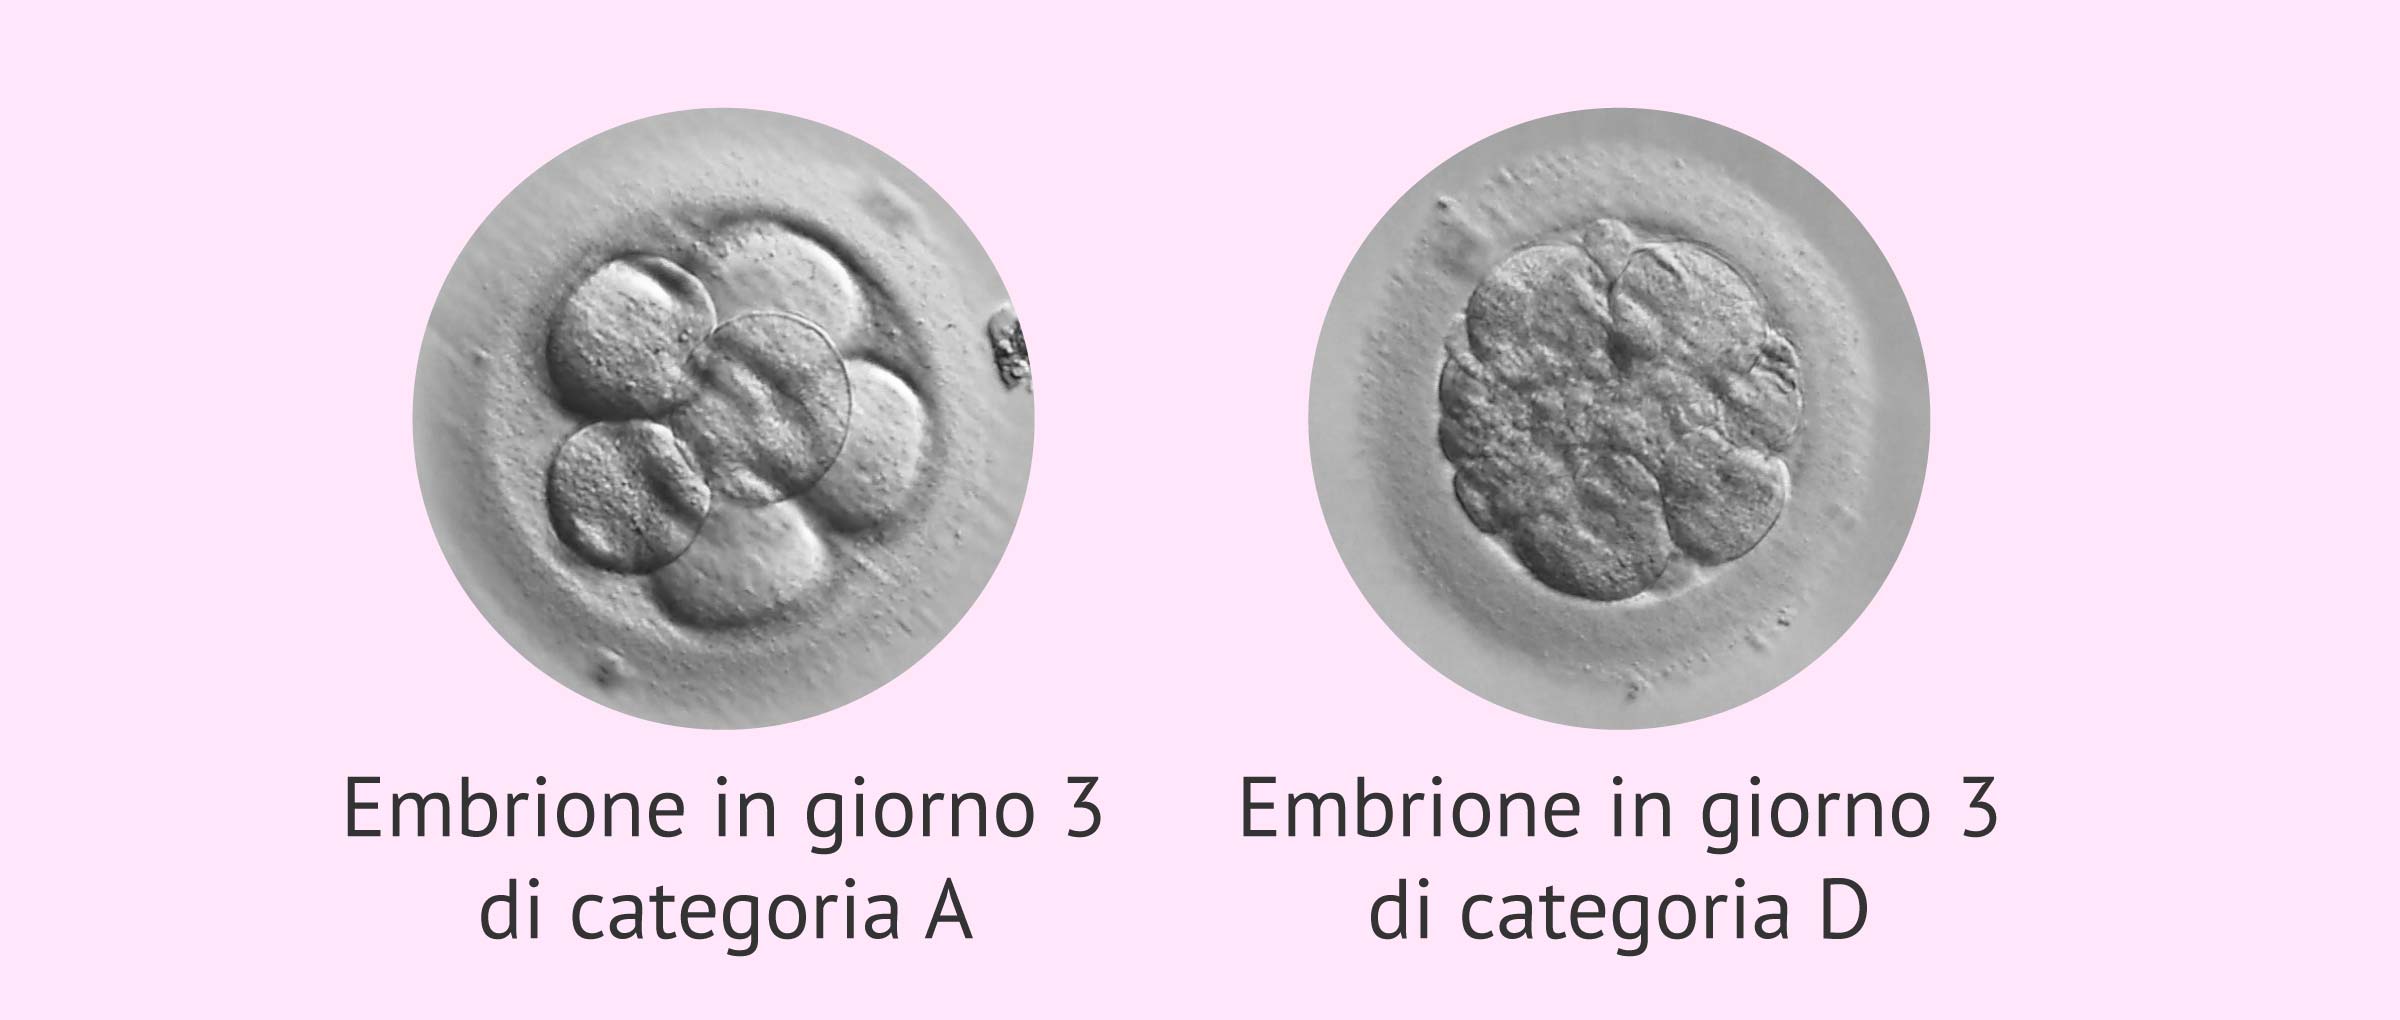 Classificazione degli embrioni al terzo giorno di sviluppo